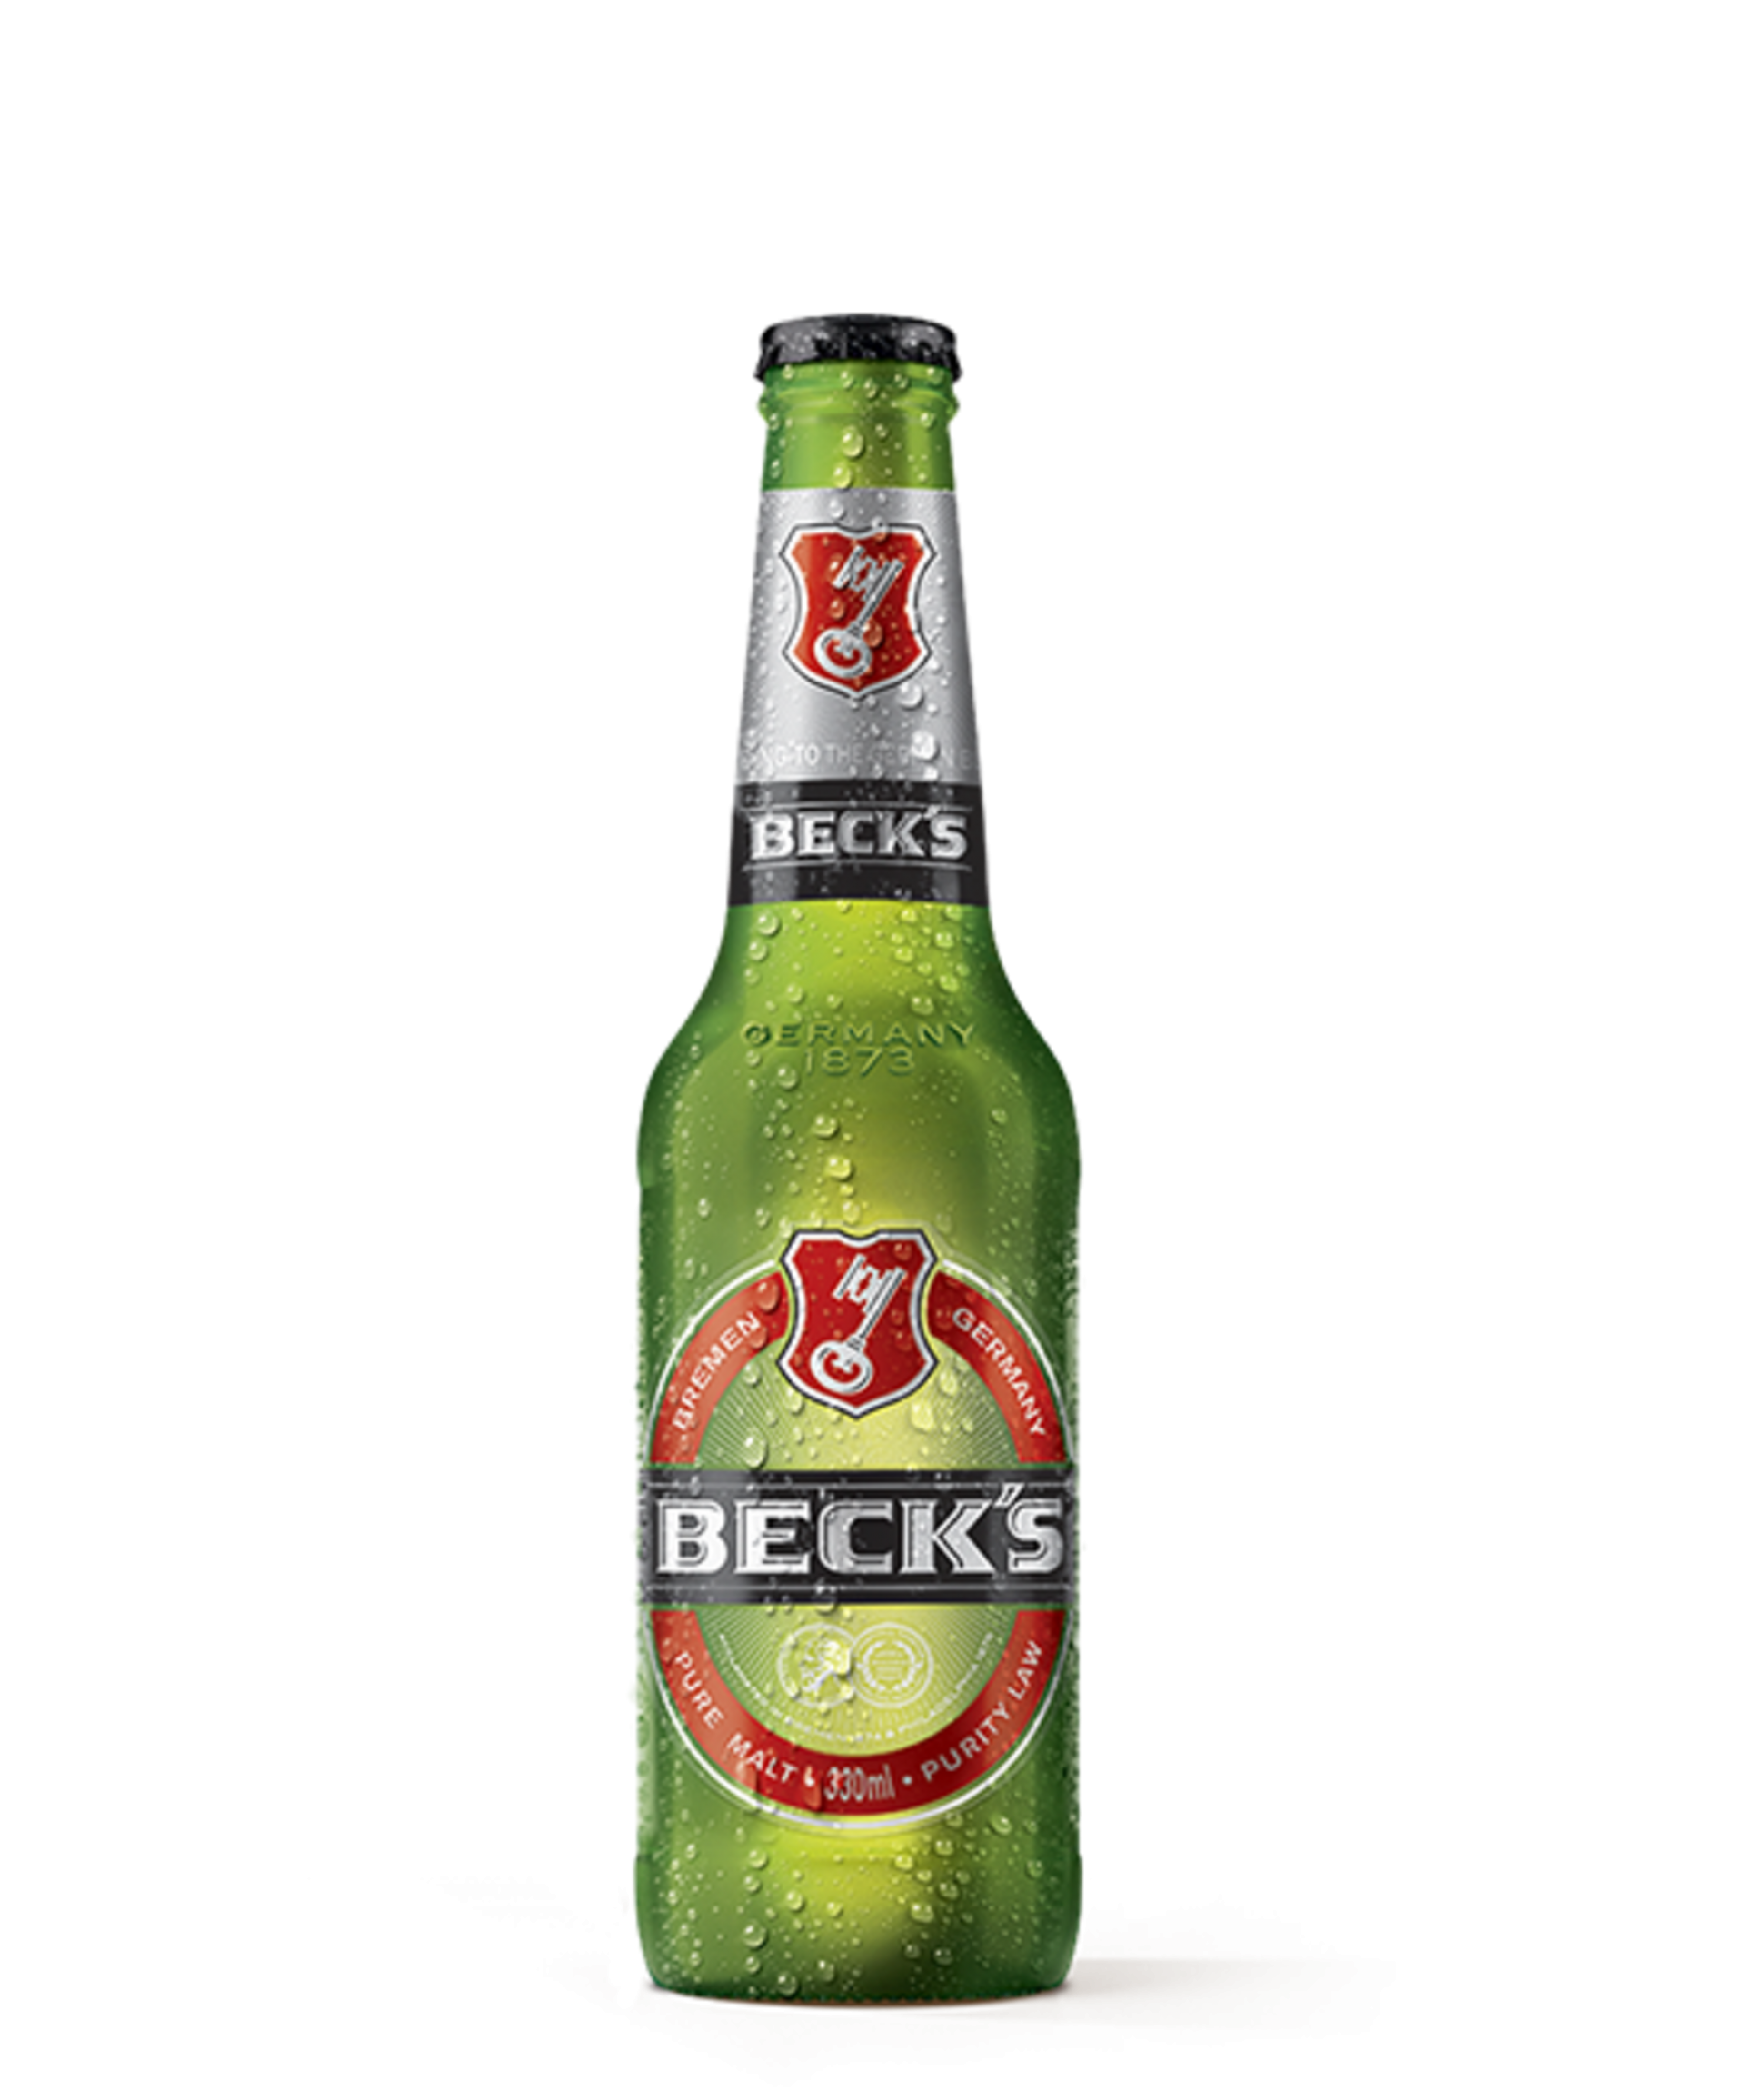 Cerveja Beck's entra no rol de bebidas premium (Foto: Reprodução)